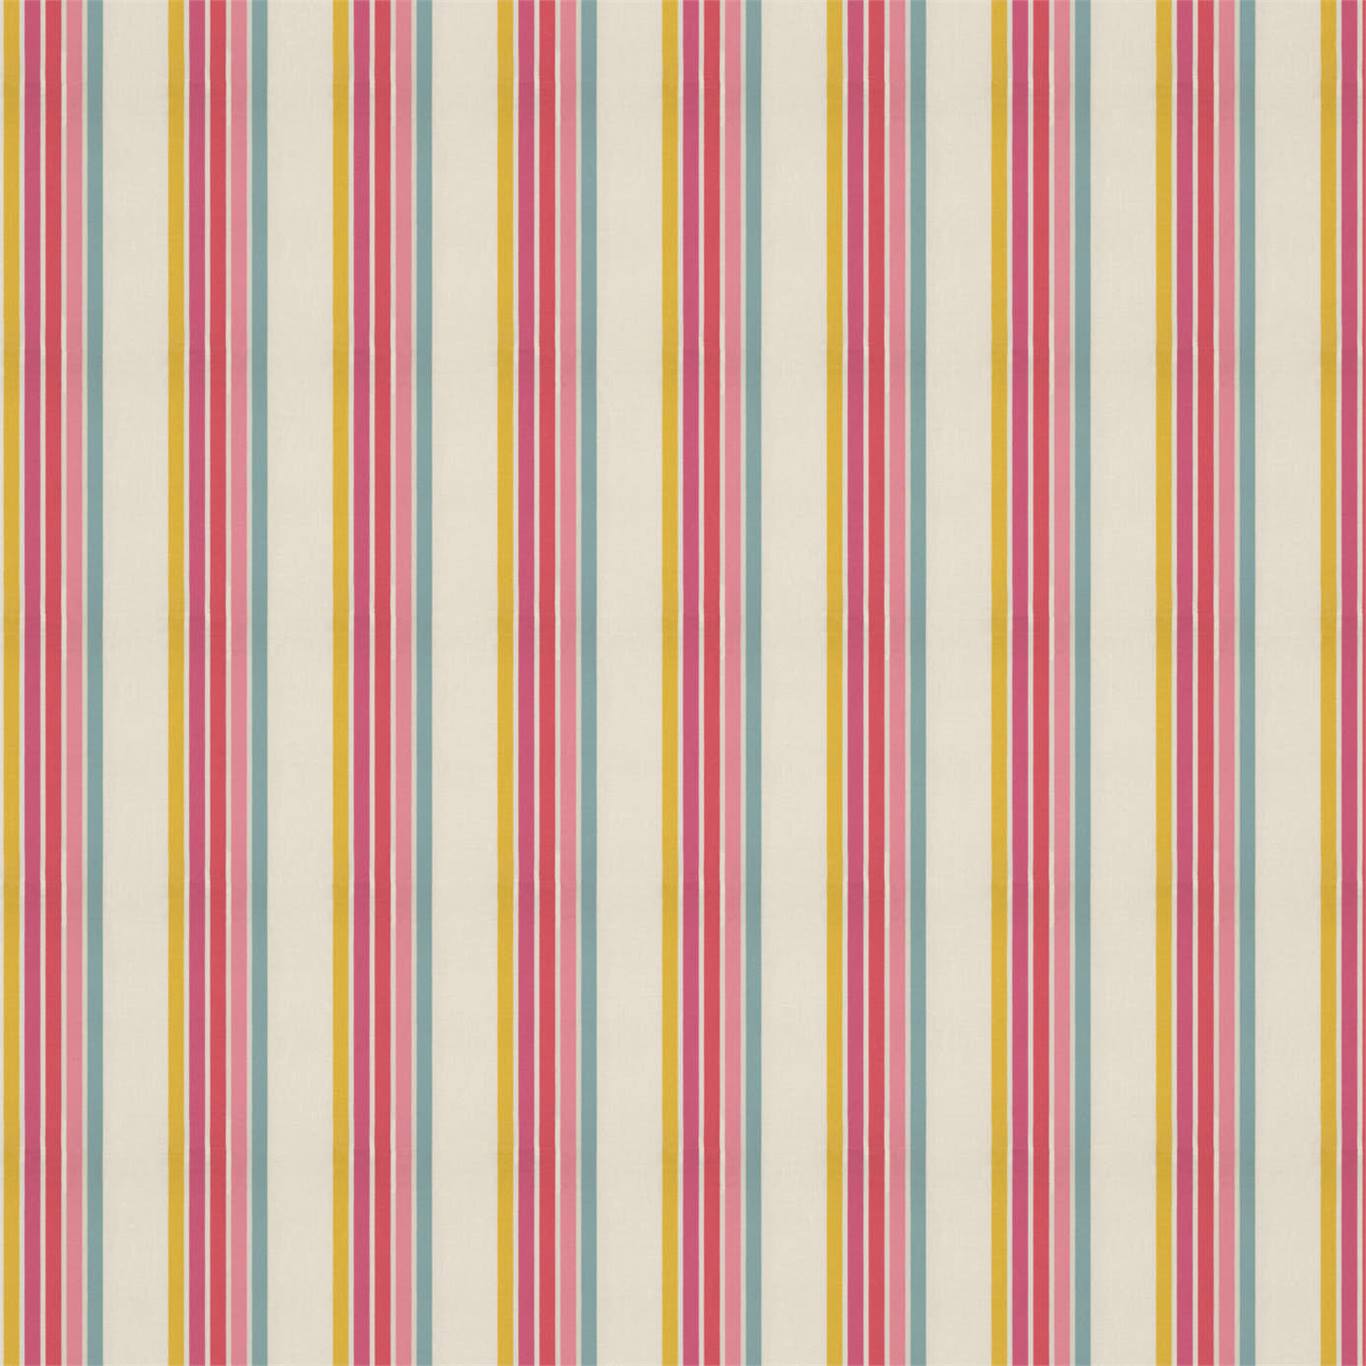 Ткань Helter skelter stripe от Harlequin